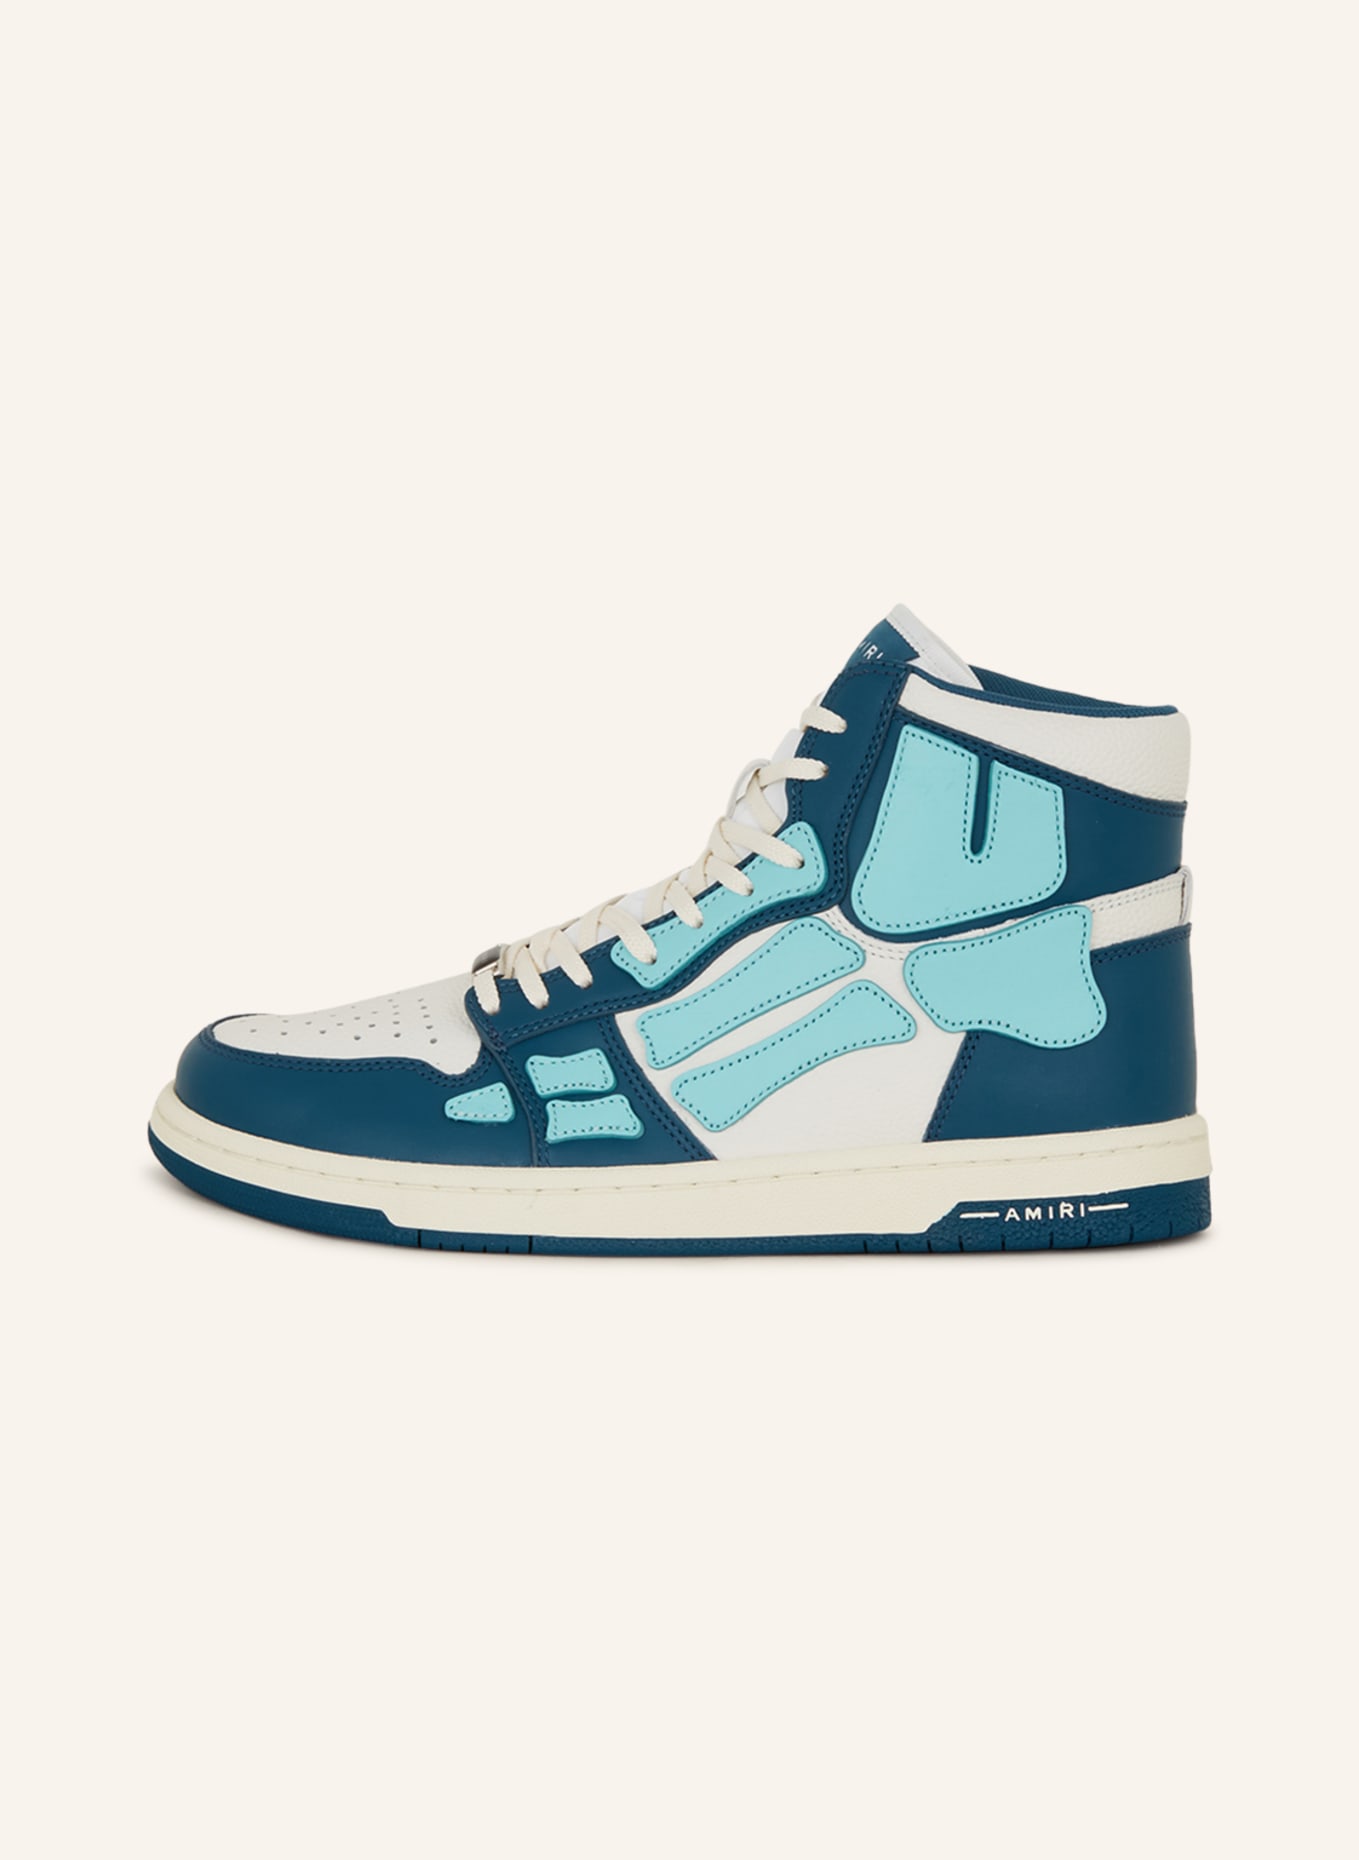 AMIRI Hightop-Sneaker SKELETON, Farbe: WEISS/ PETROL/ TÜRKIS (Bild 4)